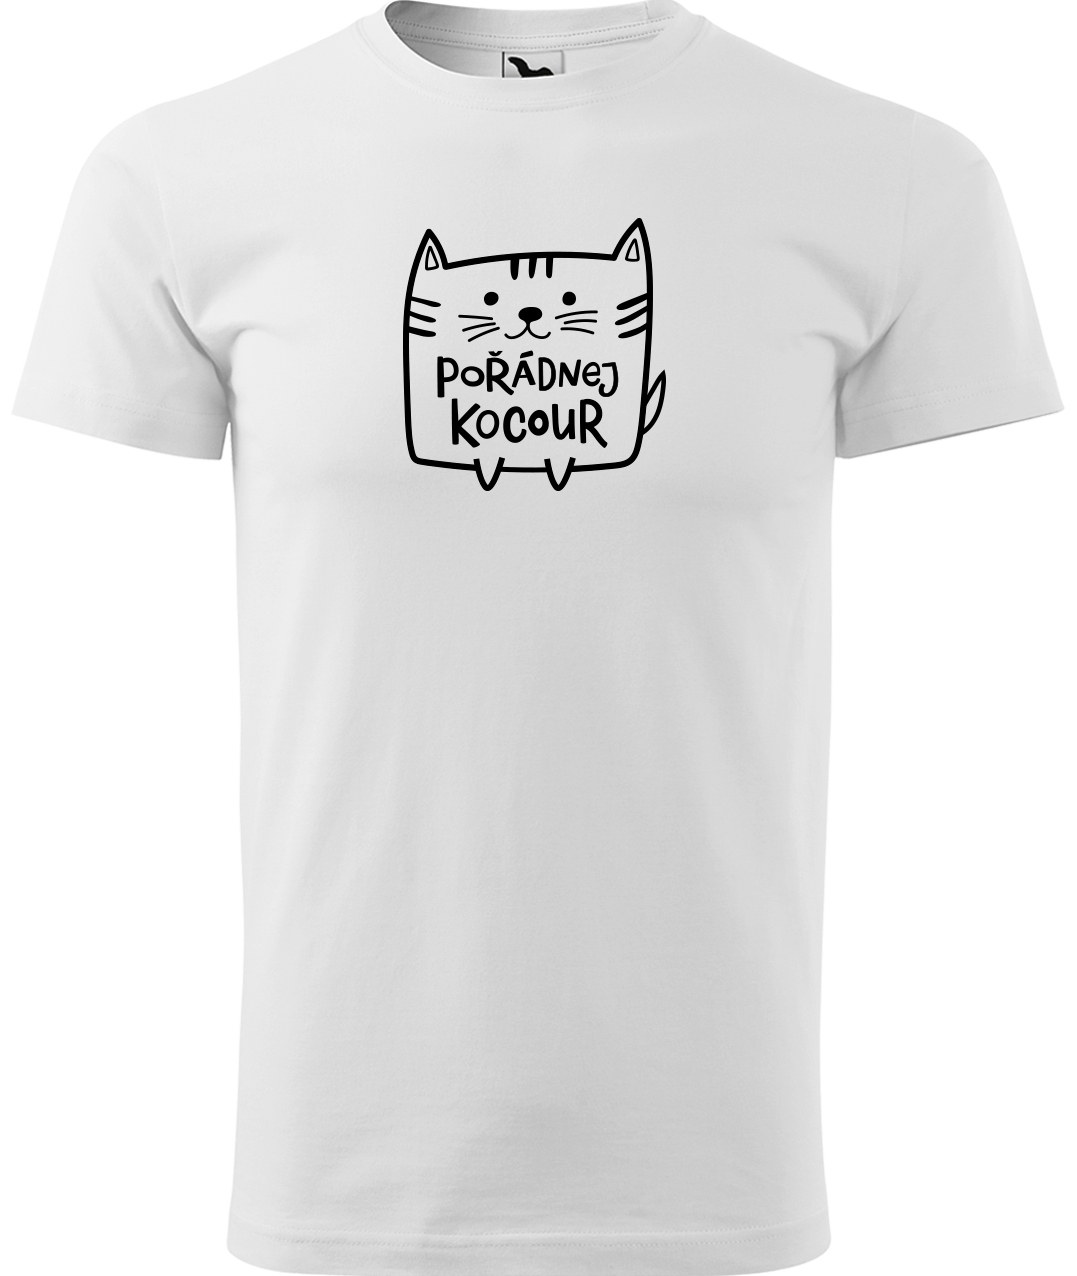 Pánské tričko s kočkou - Pořádnej kocour Velikost: 4XL, Barva: Bílá (00)